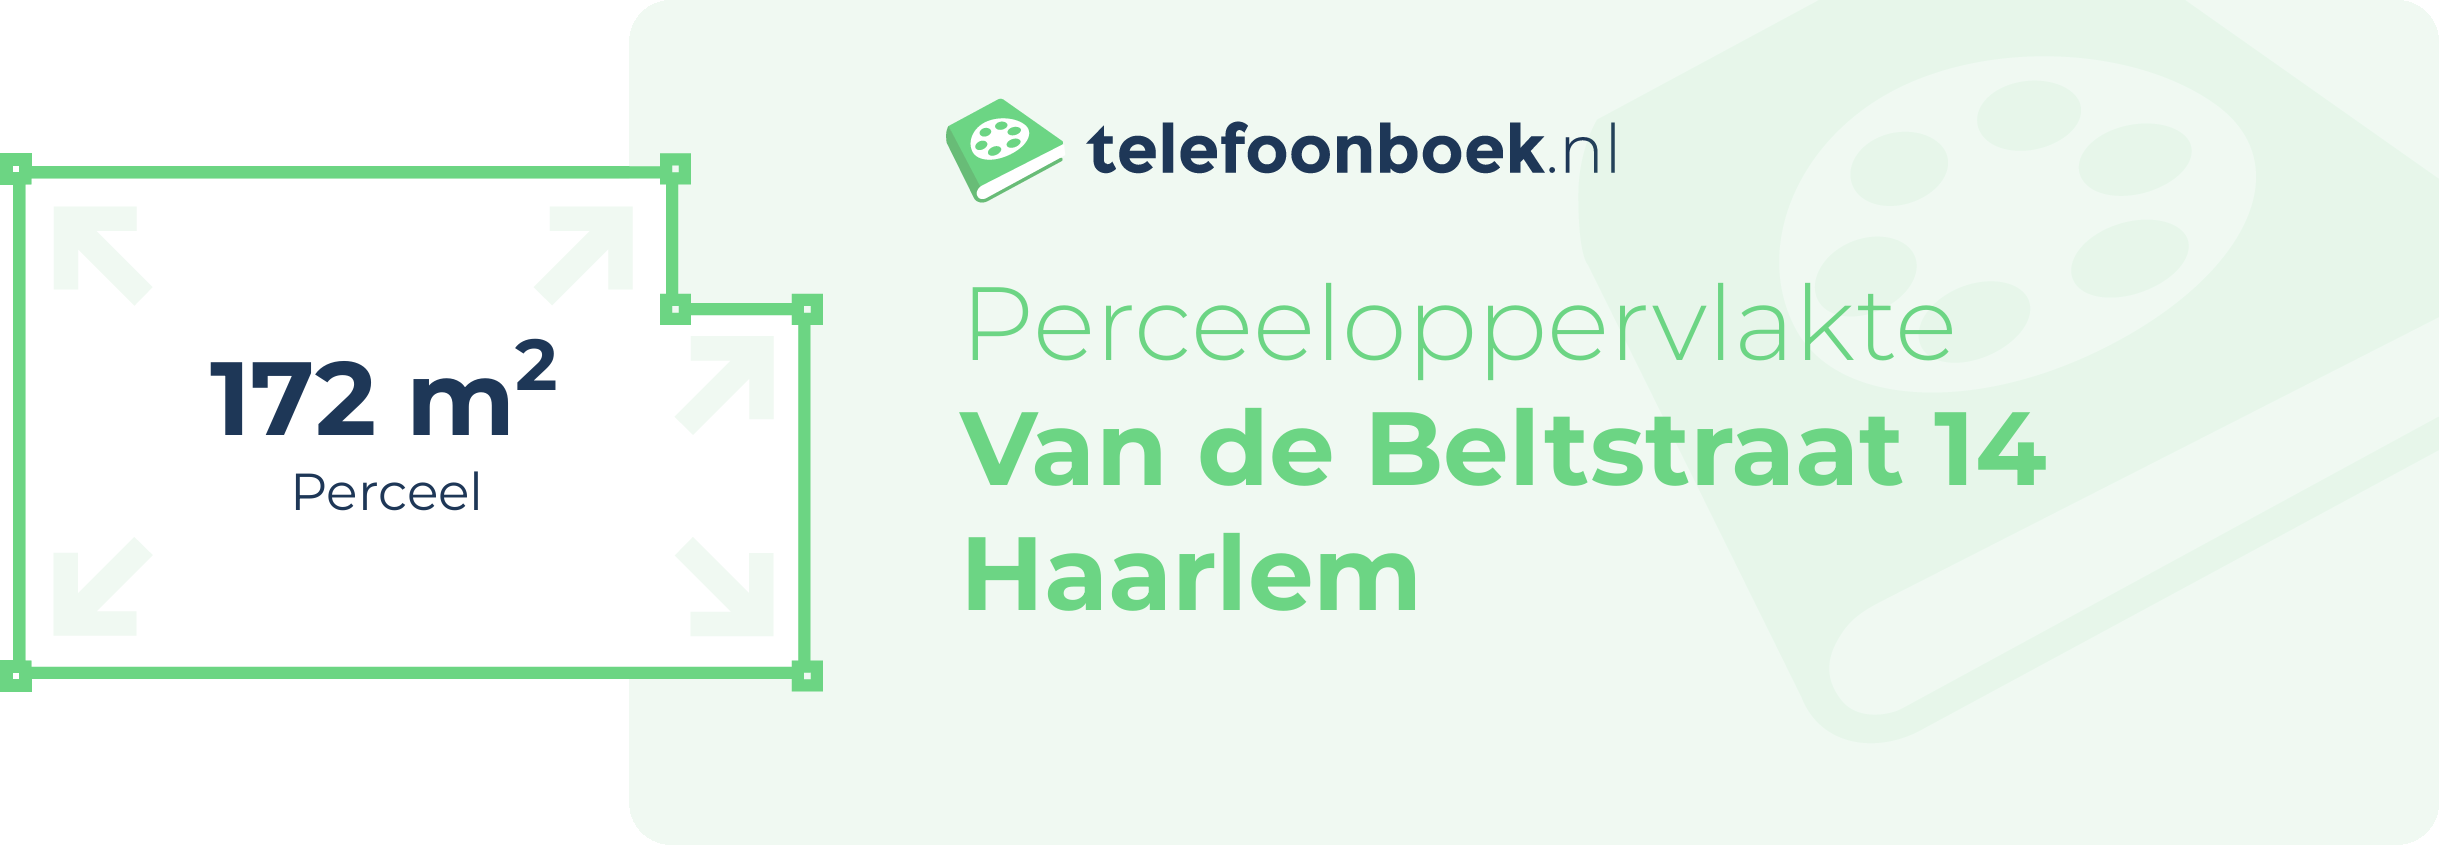 Perceeloppervlakte Van De Beltstraat 14 Haarlem